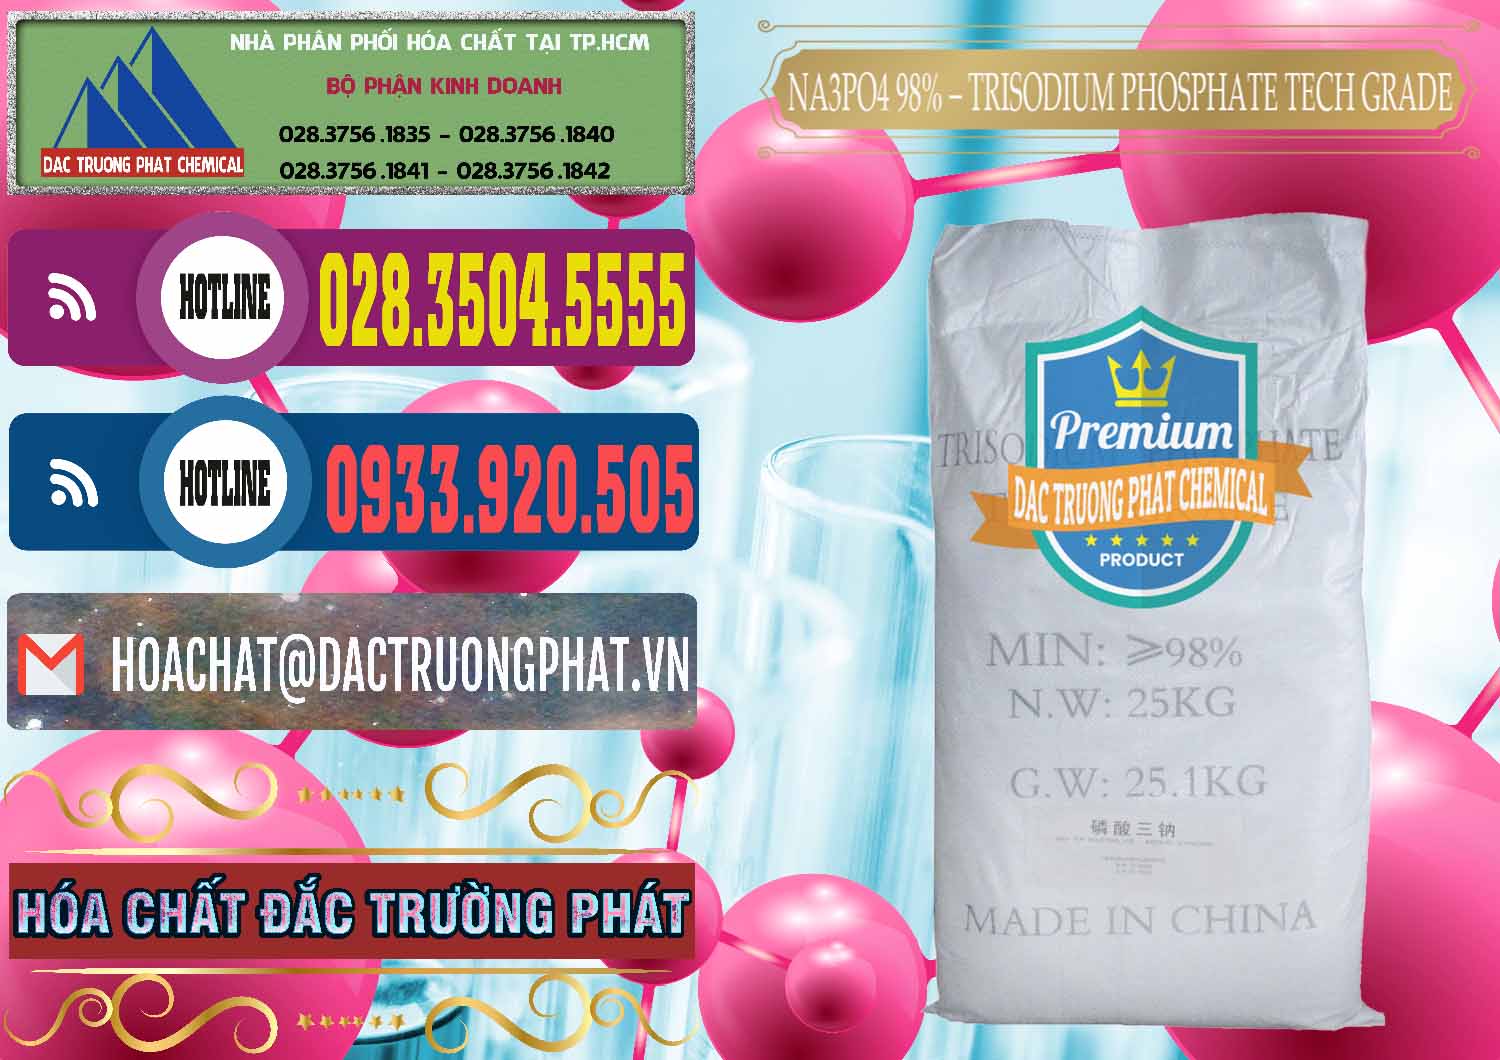 Chuyên bán và phân phối Na3PO4 – Trisodium Phosphate 96% Tech Grade Trung Quốc China - 0104 - Cty phân phối và cung cấp hóa chất tại TP.HCM - muabanhoachat.com.vn